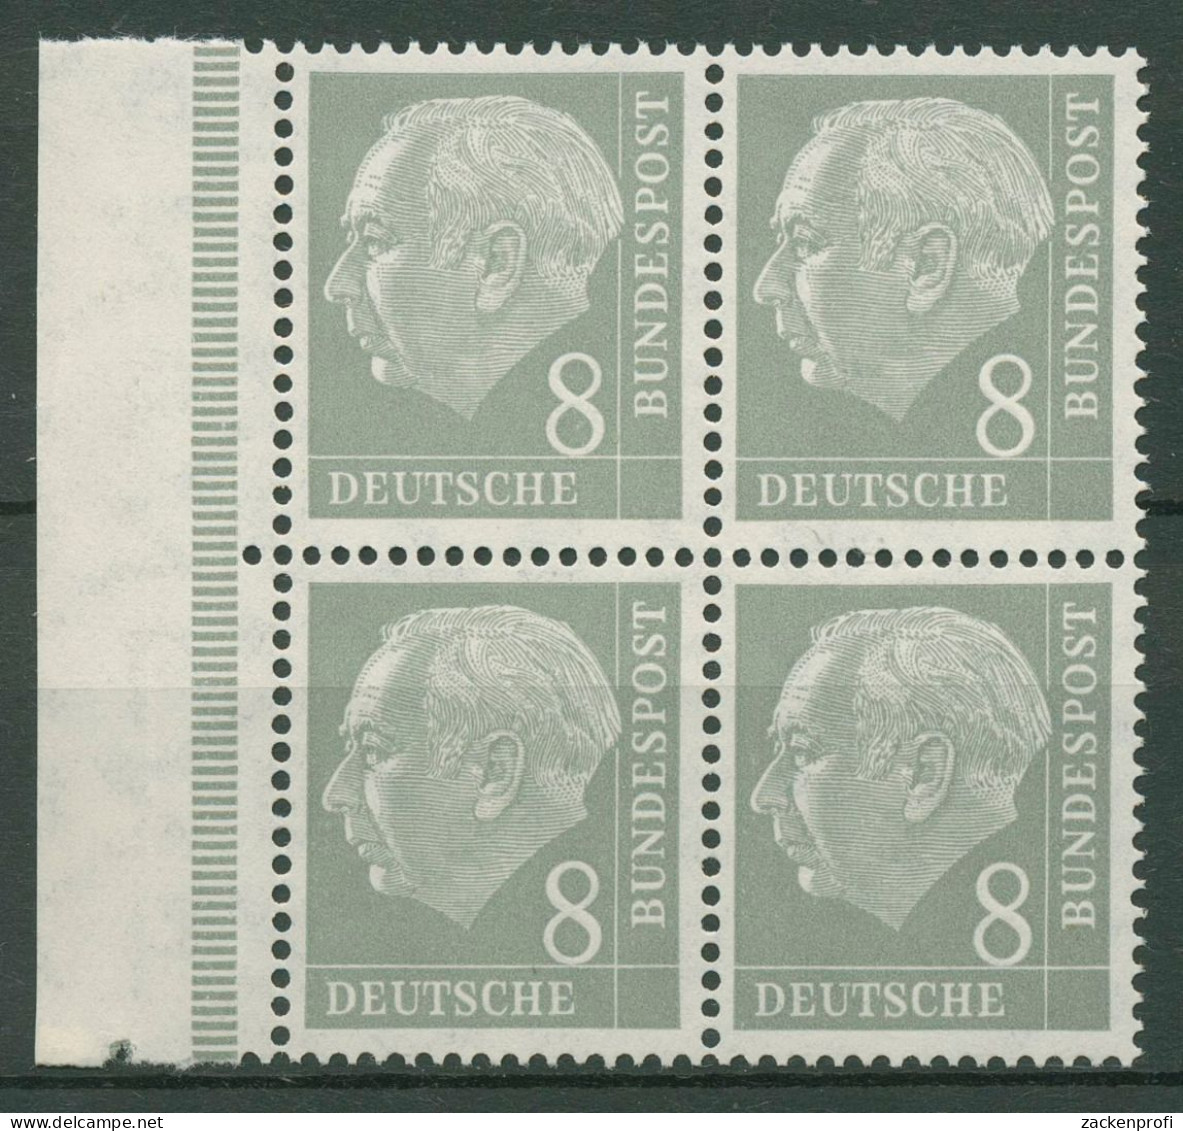 Bund 1954 Heuss I Bogenmarke 182 X Ww 4er-Block Rand Links Postfrisch - Neufs